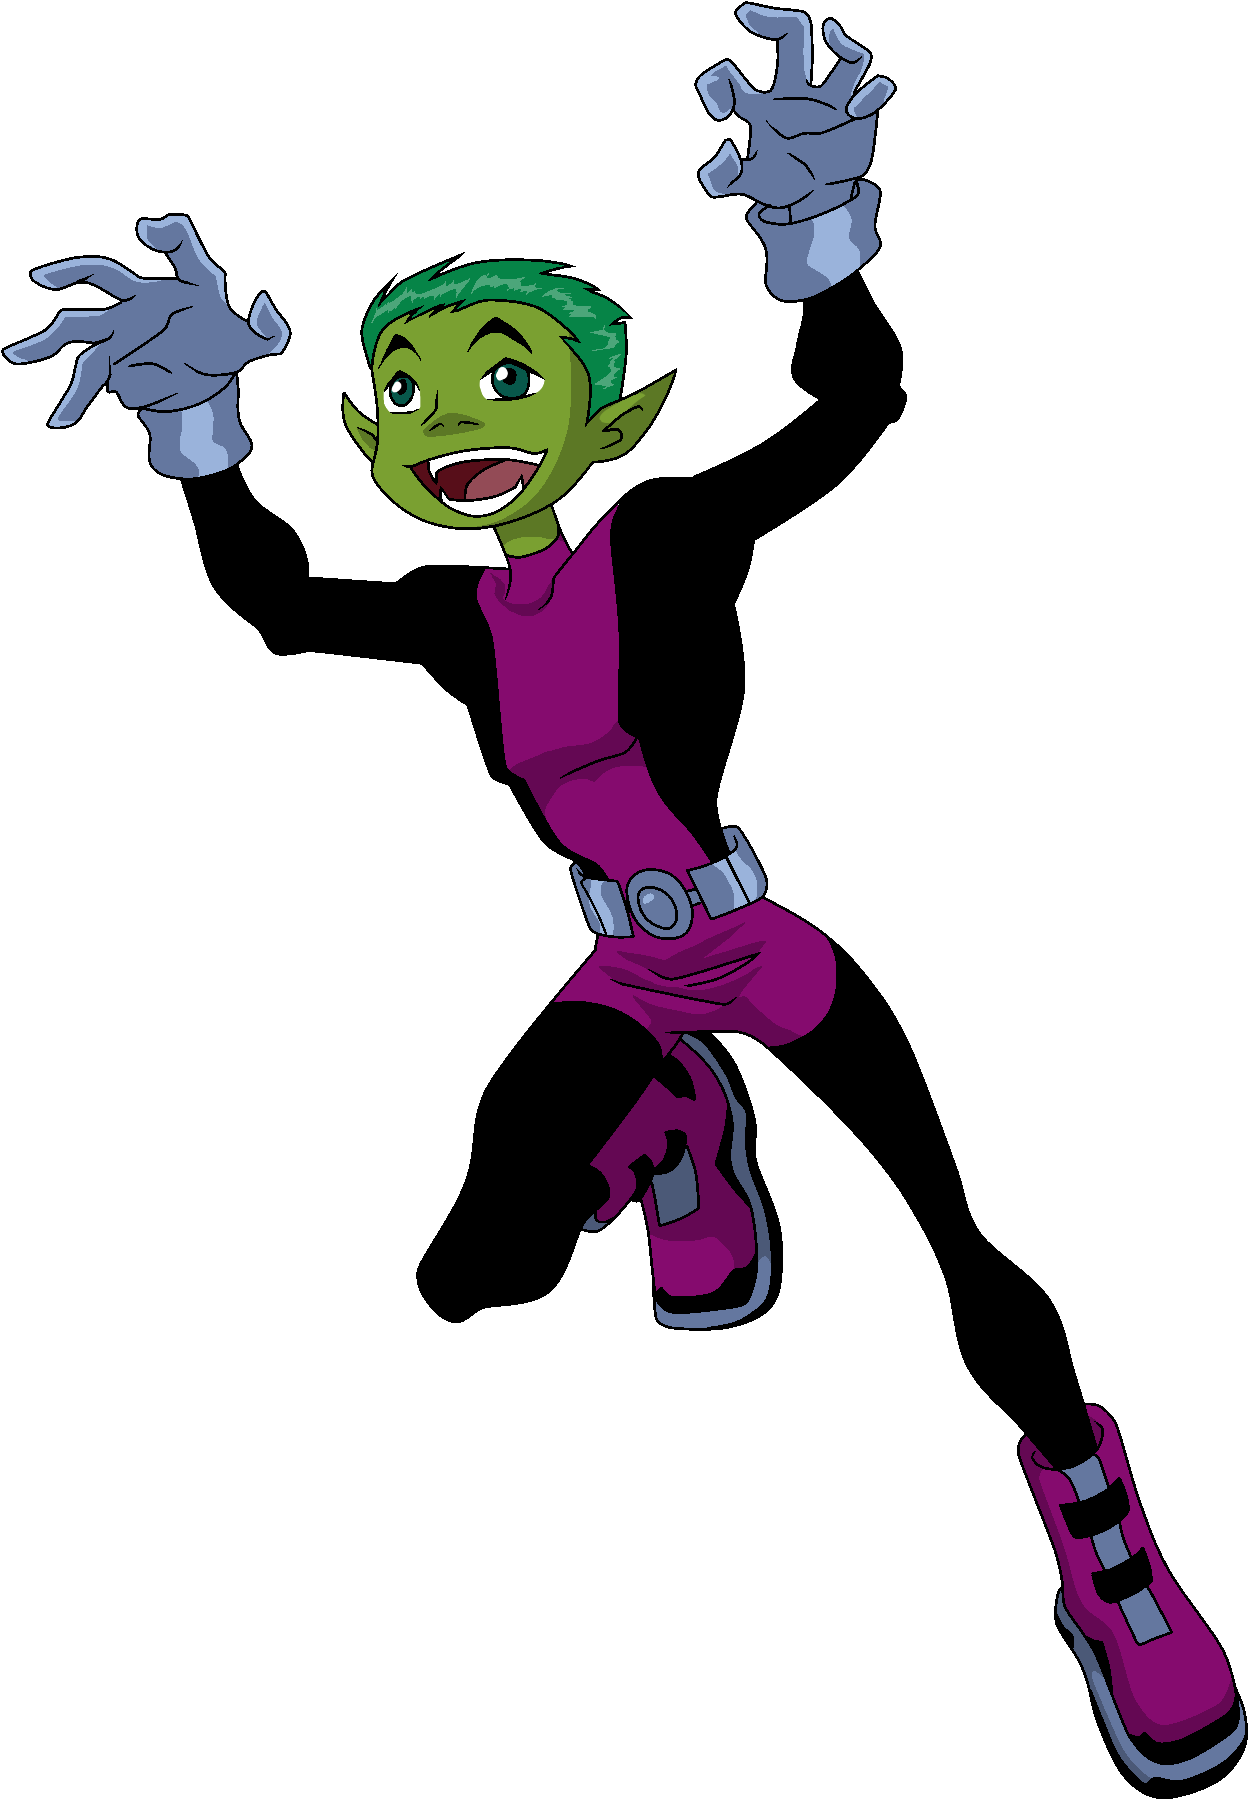 Animated Green Elf Character Joyful Pose PNG